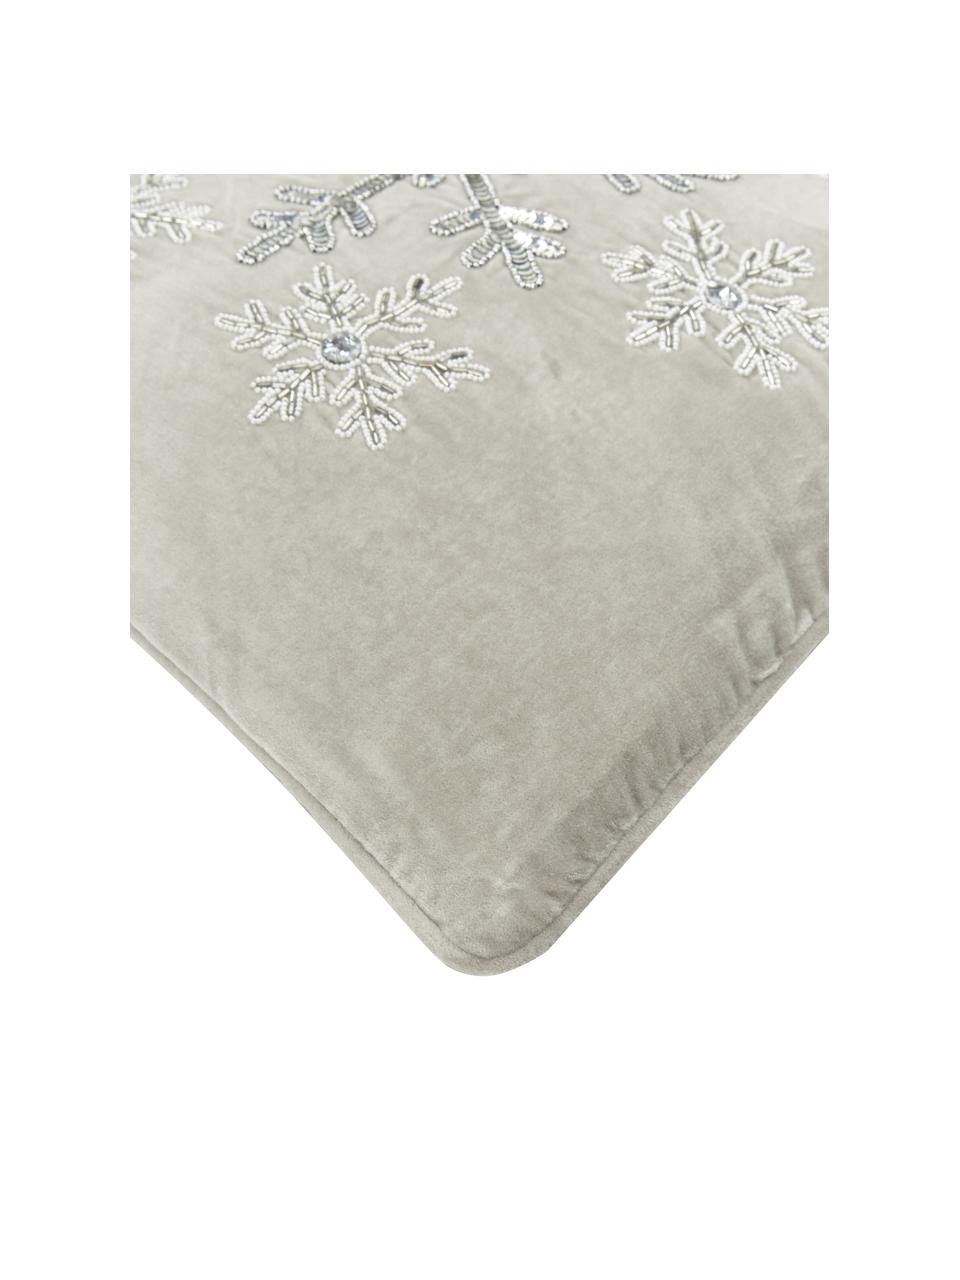 Bestickte Samt-Kissenhülle Snowflake in Grau, Samt (100% Baumwolle), Grau, 45 x 45 cm